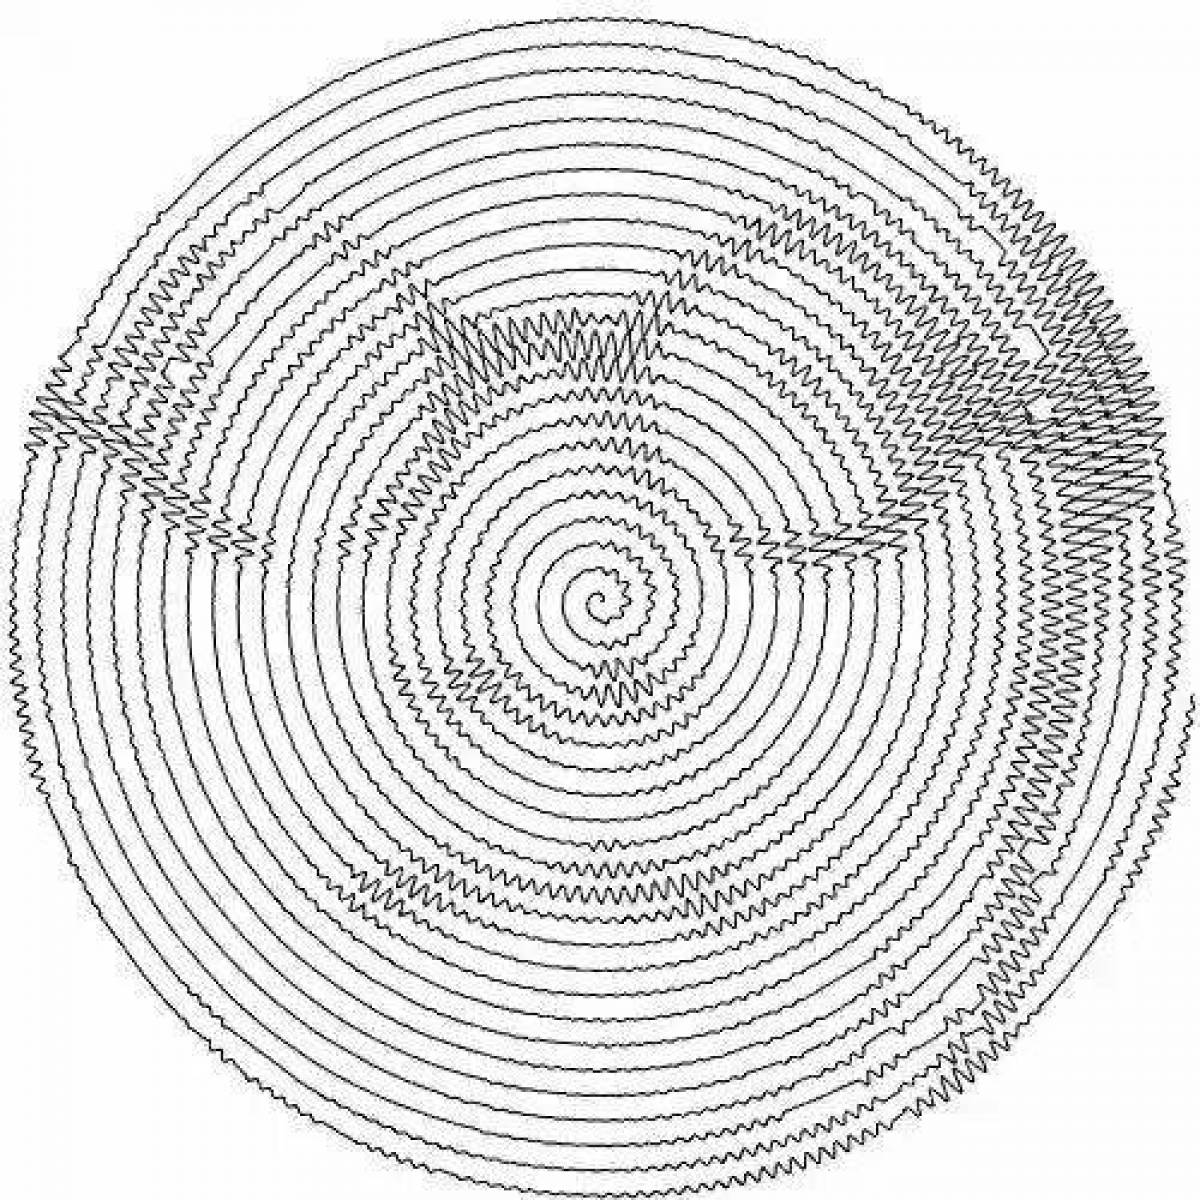 Bold spiral portrait